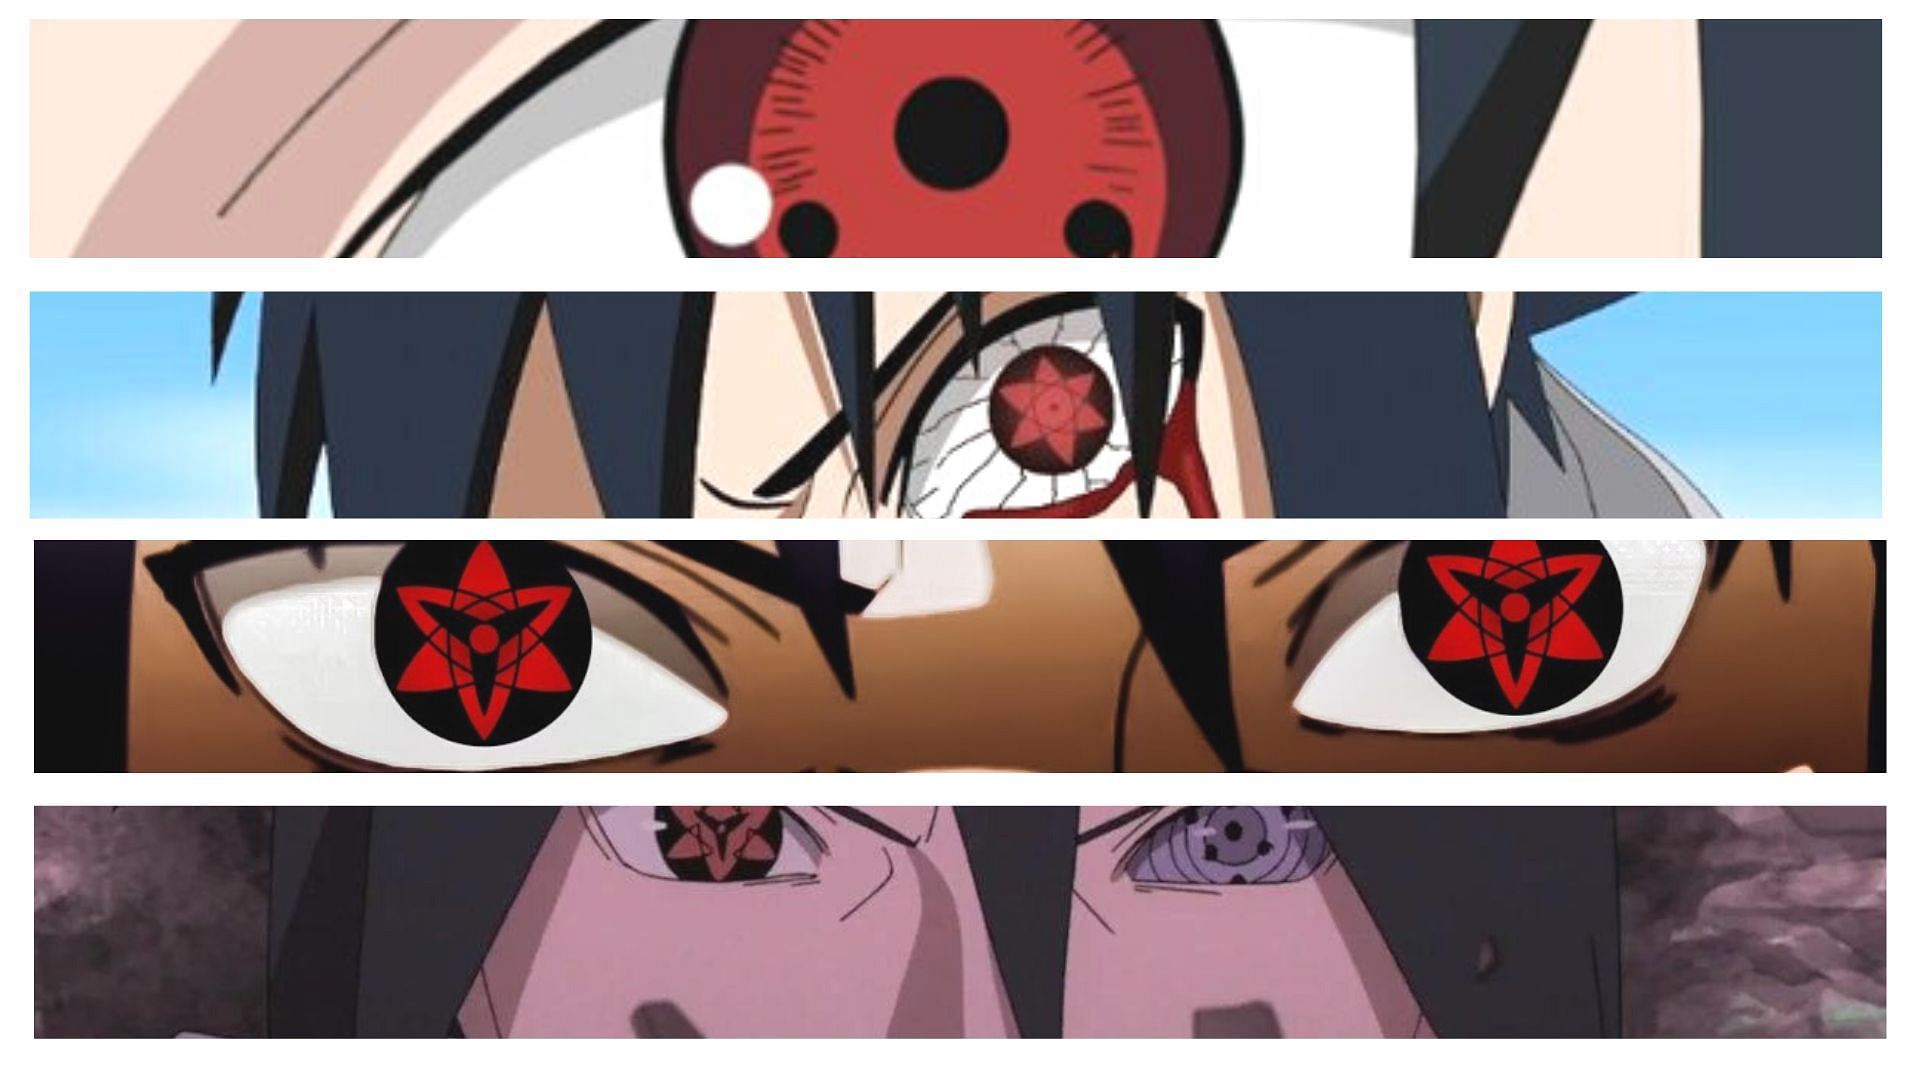 Every Power Sasuke Has On Naruto Explained